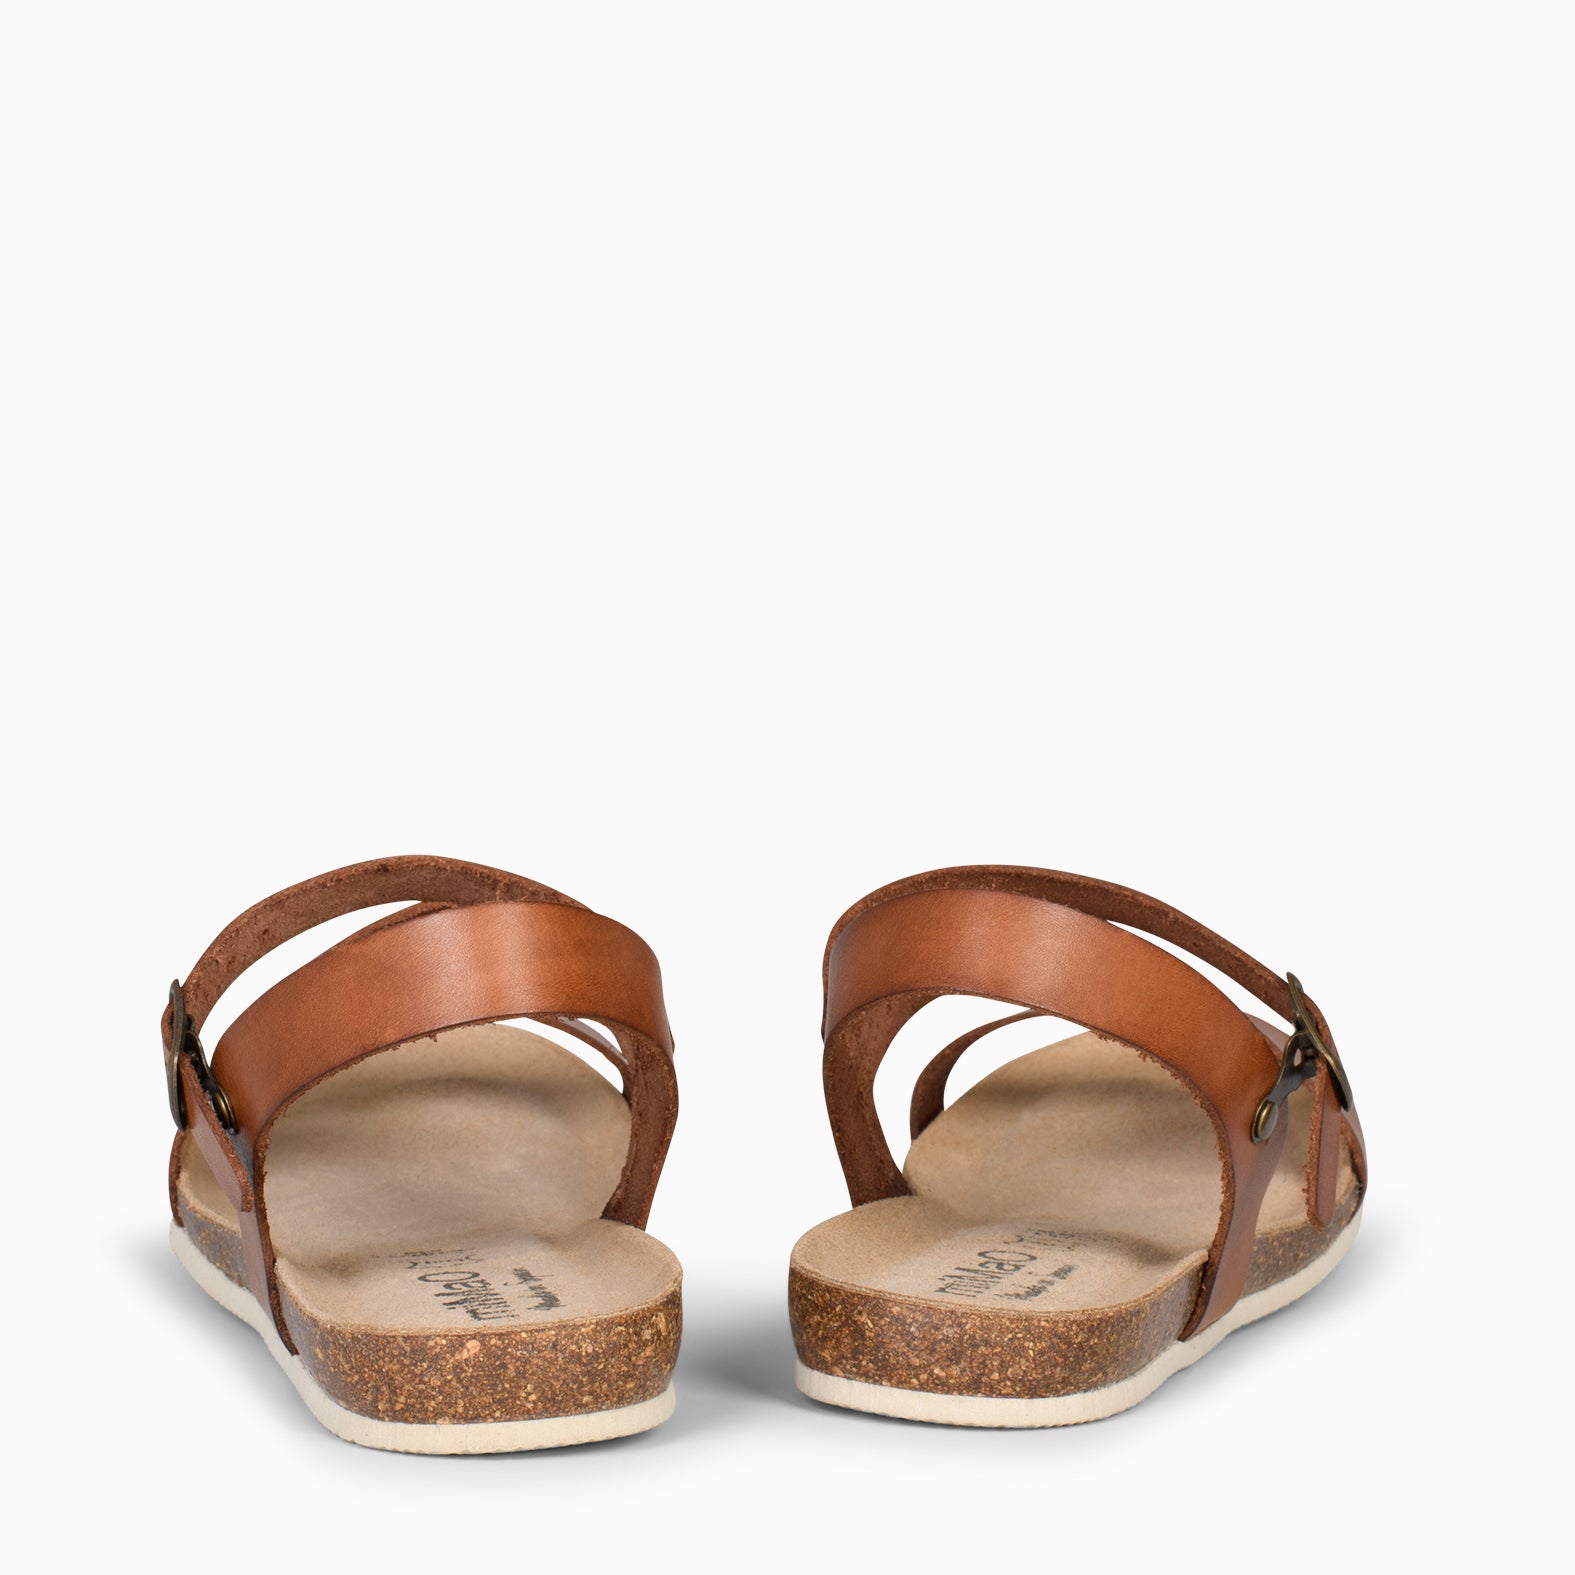 LIS – Sandales en cuir MARRON et liège